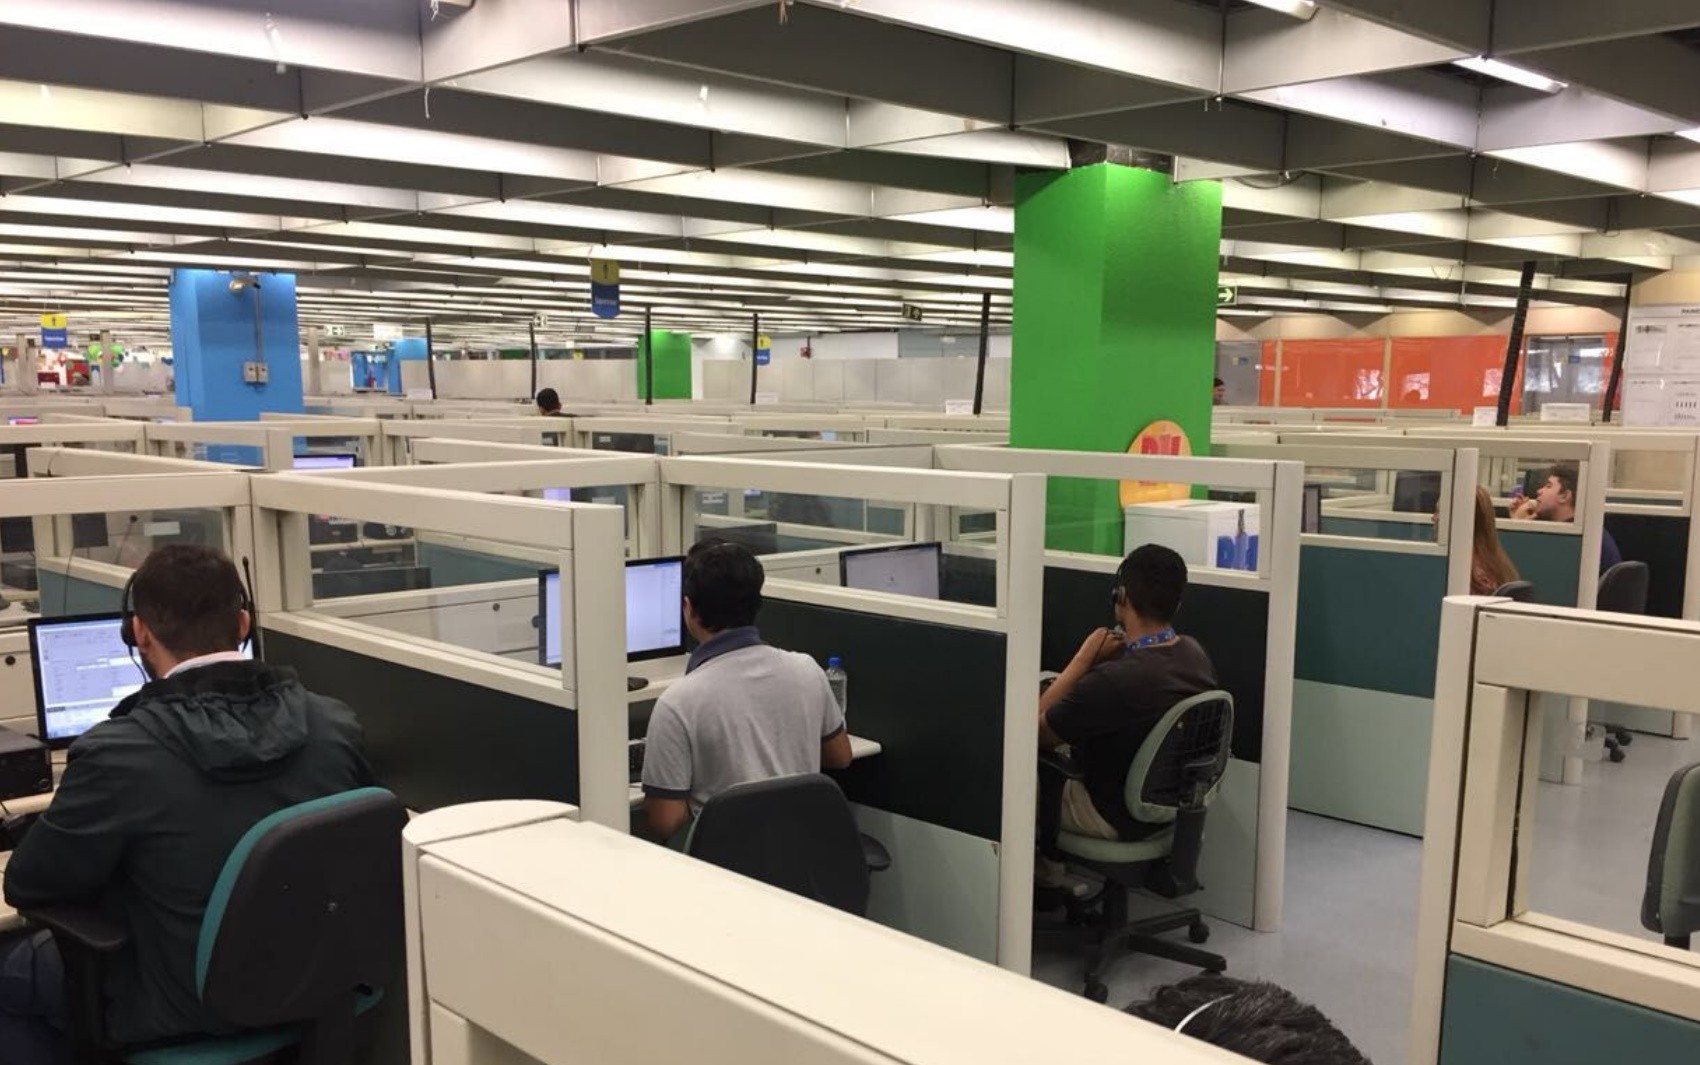 Empresa de telefonia oferece 500 vagas de emprego para atendente de call center, em Goiânia